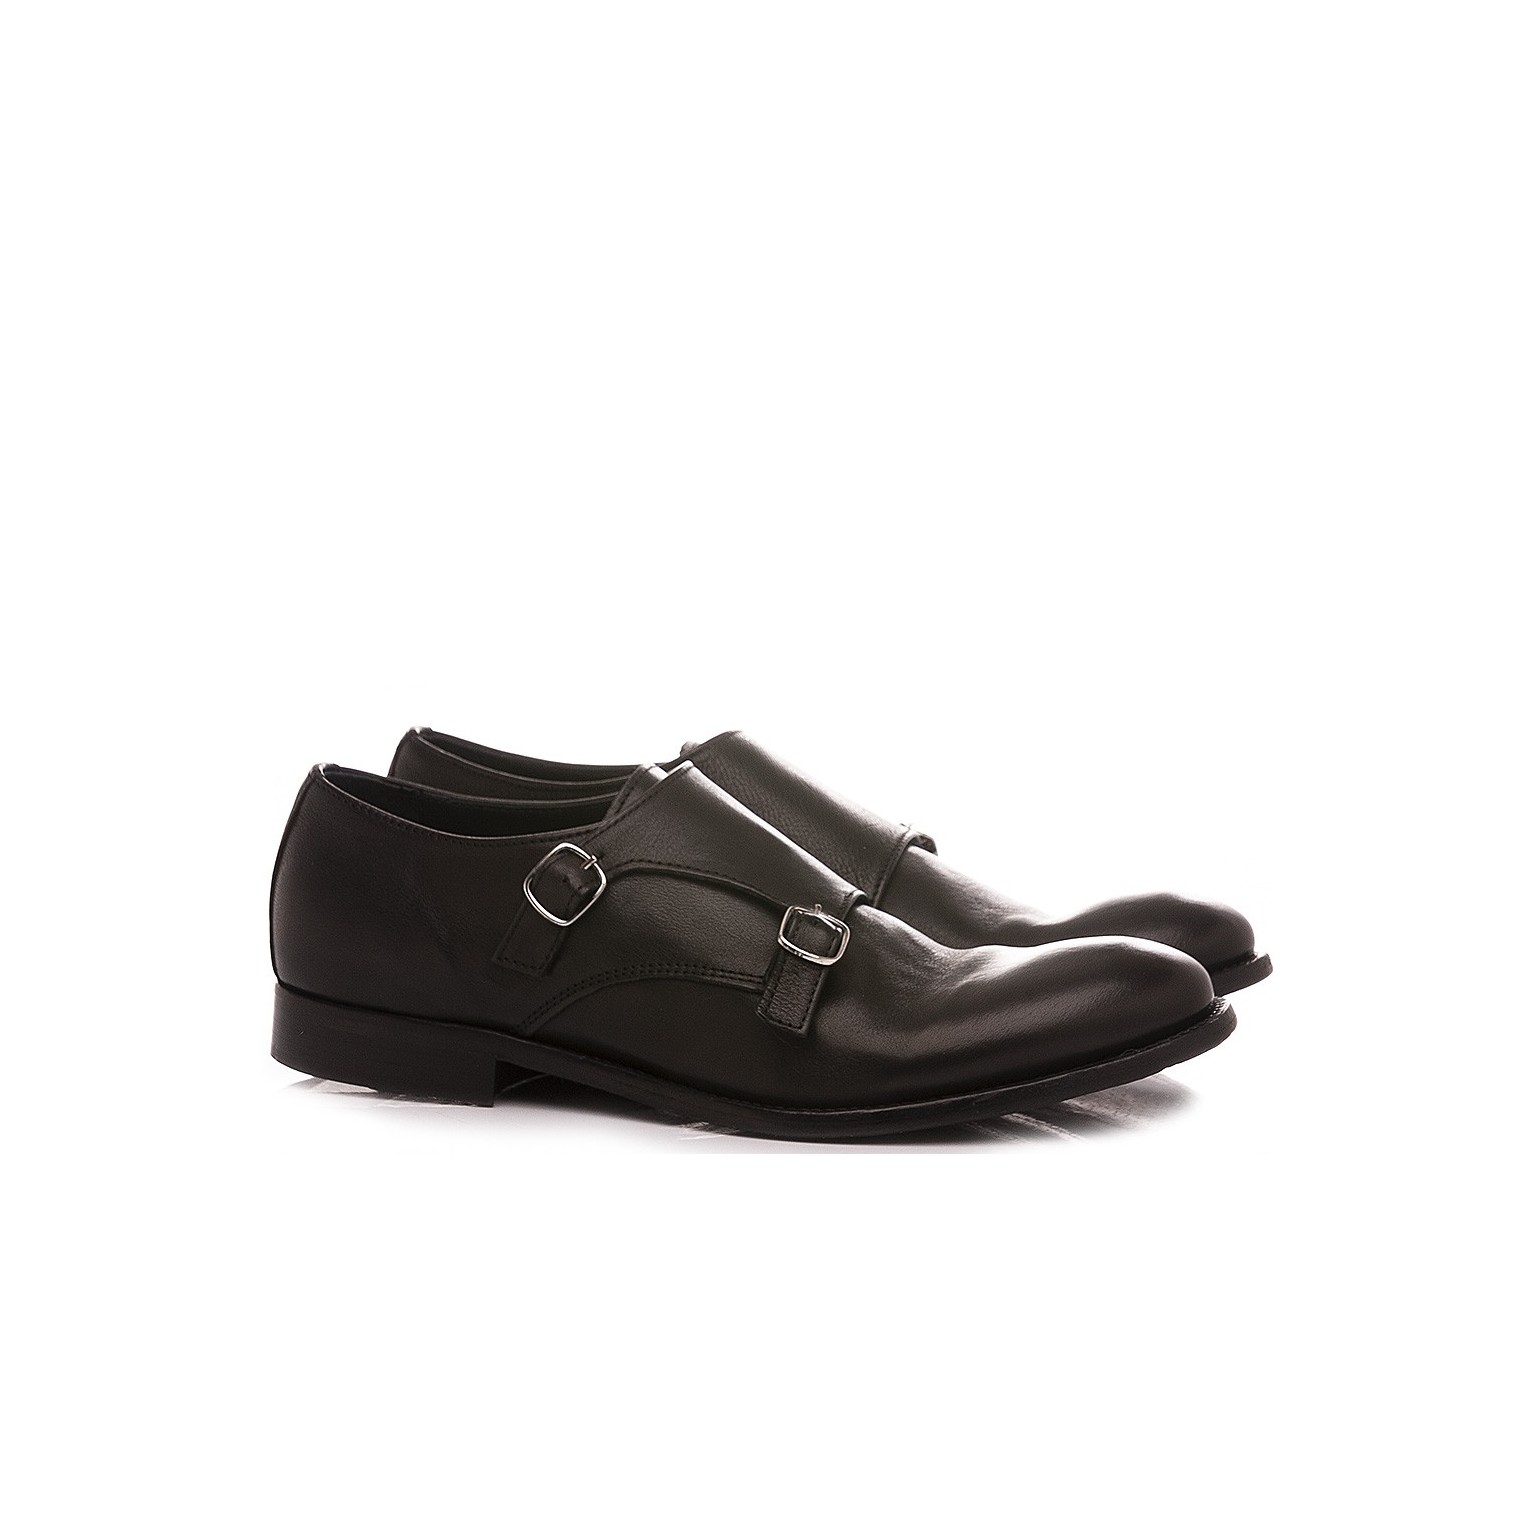 Pawelk's Men's Classic Shoes Leather Black 20029